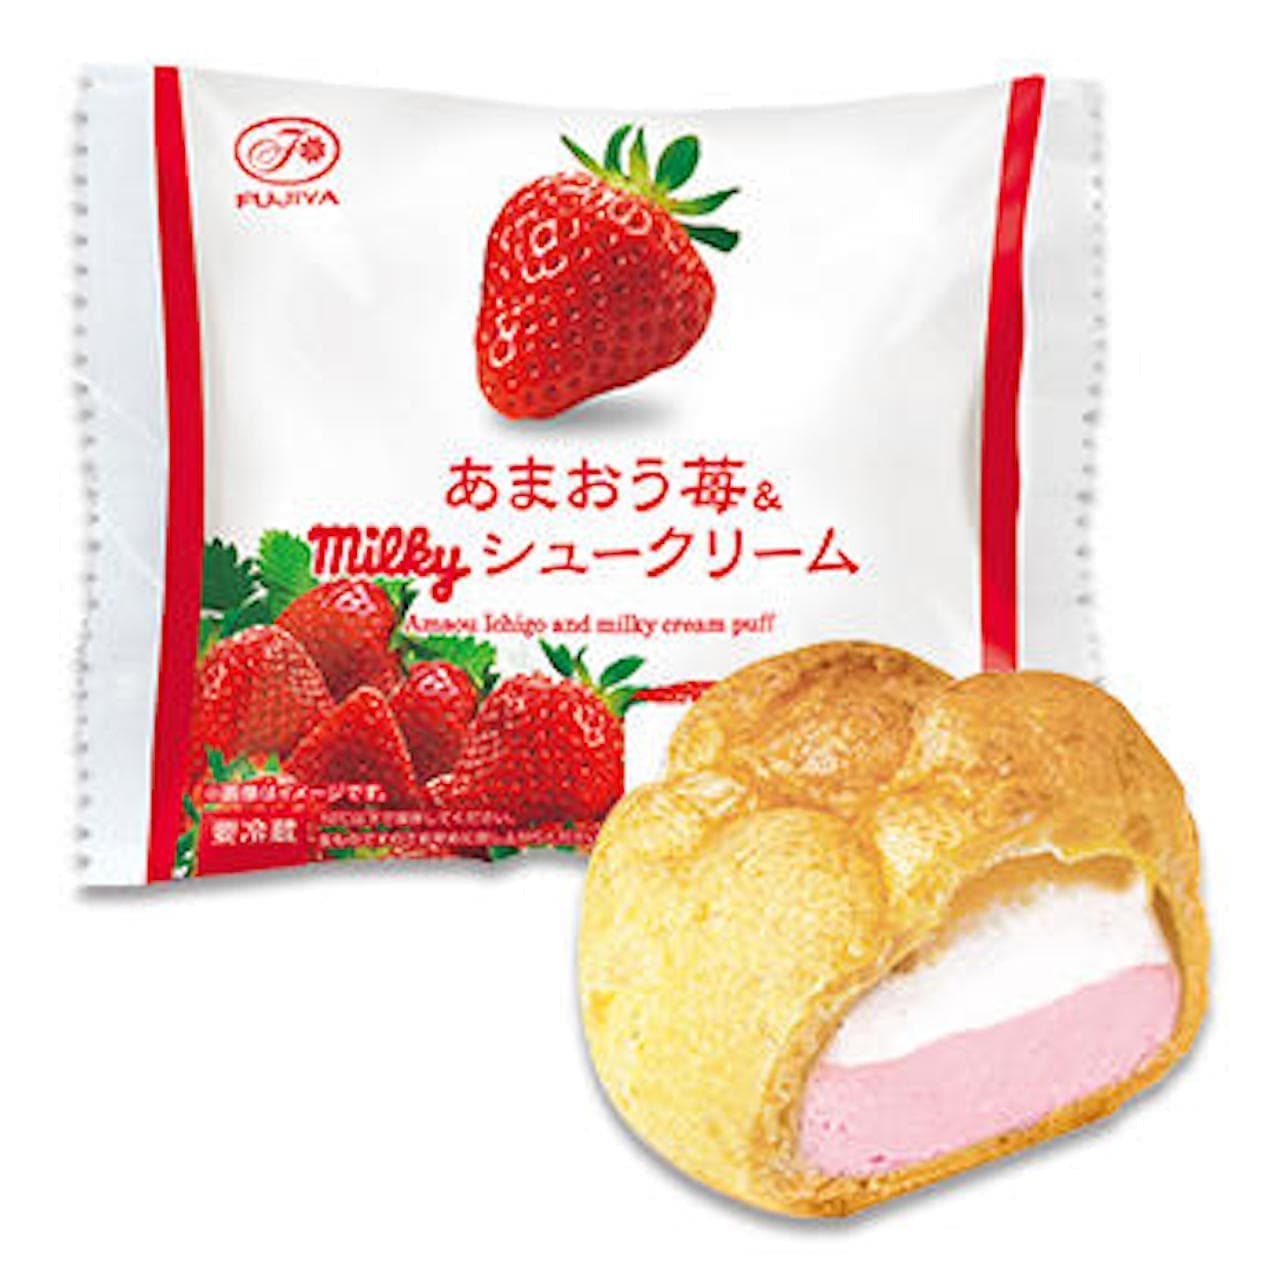 Fujiya "Amaou Strawberry & Milky Cream Puff"